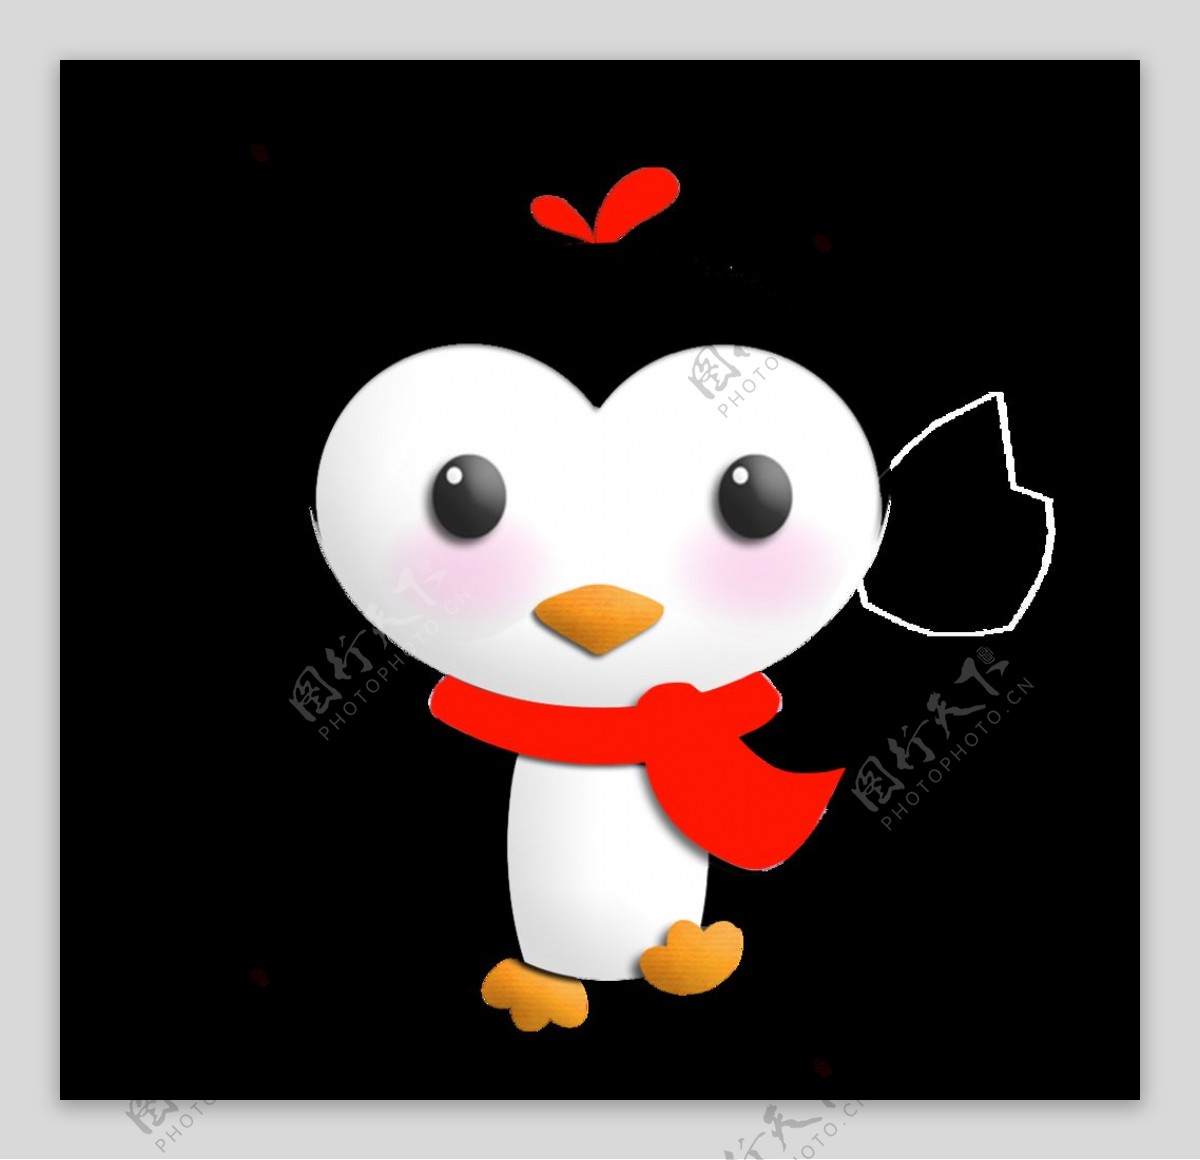 企鹅家族 企鹅宝宝 动物 - Pixabay上的免费照片 - Pixabay